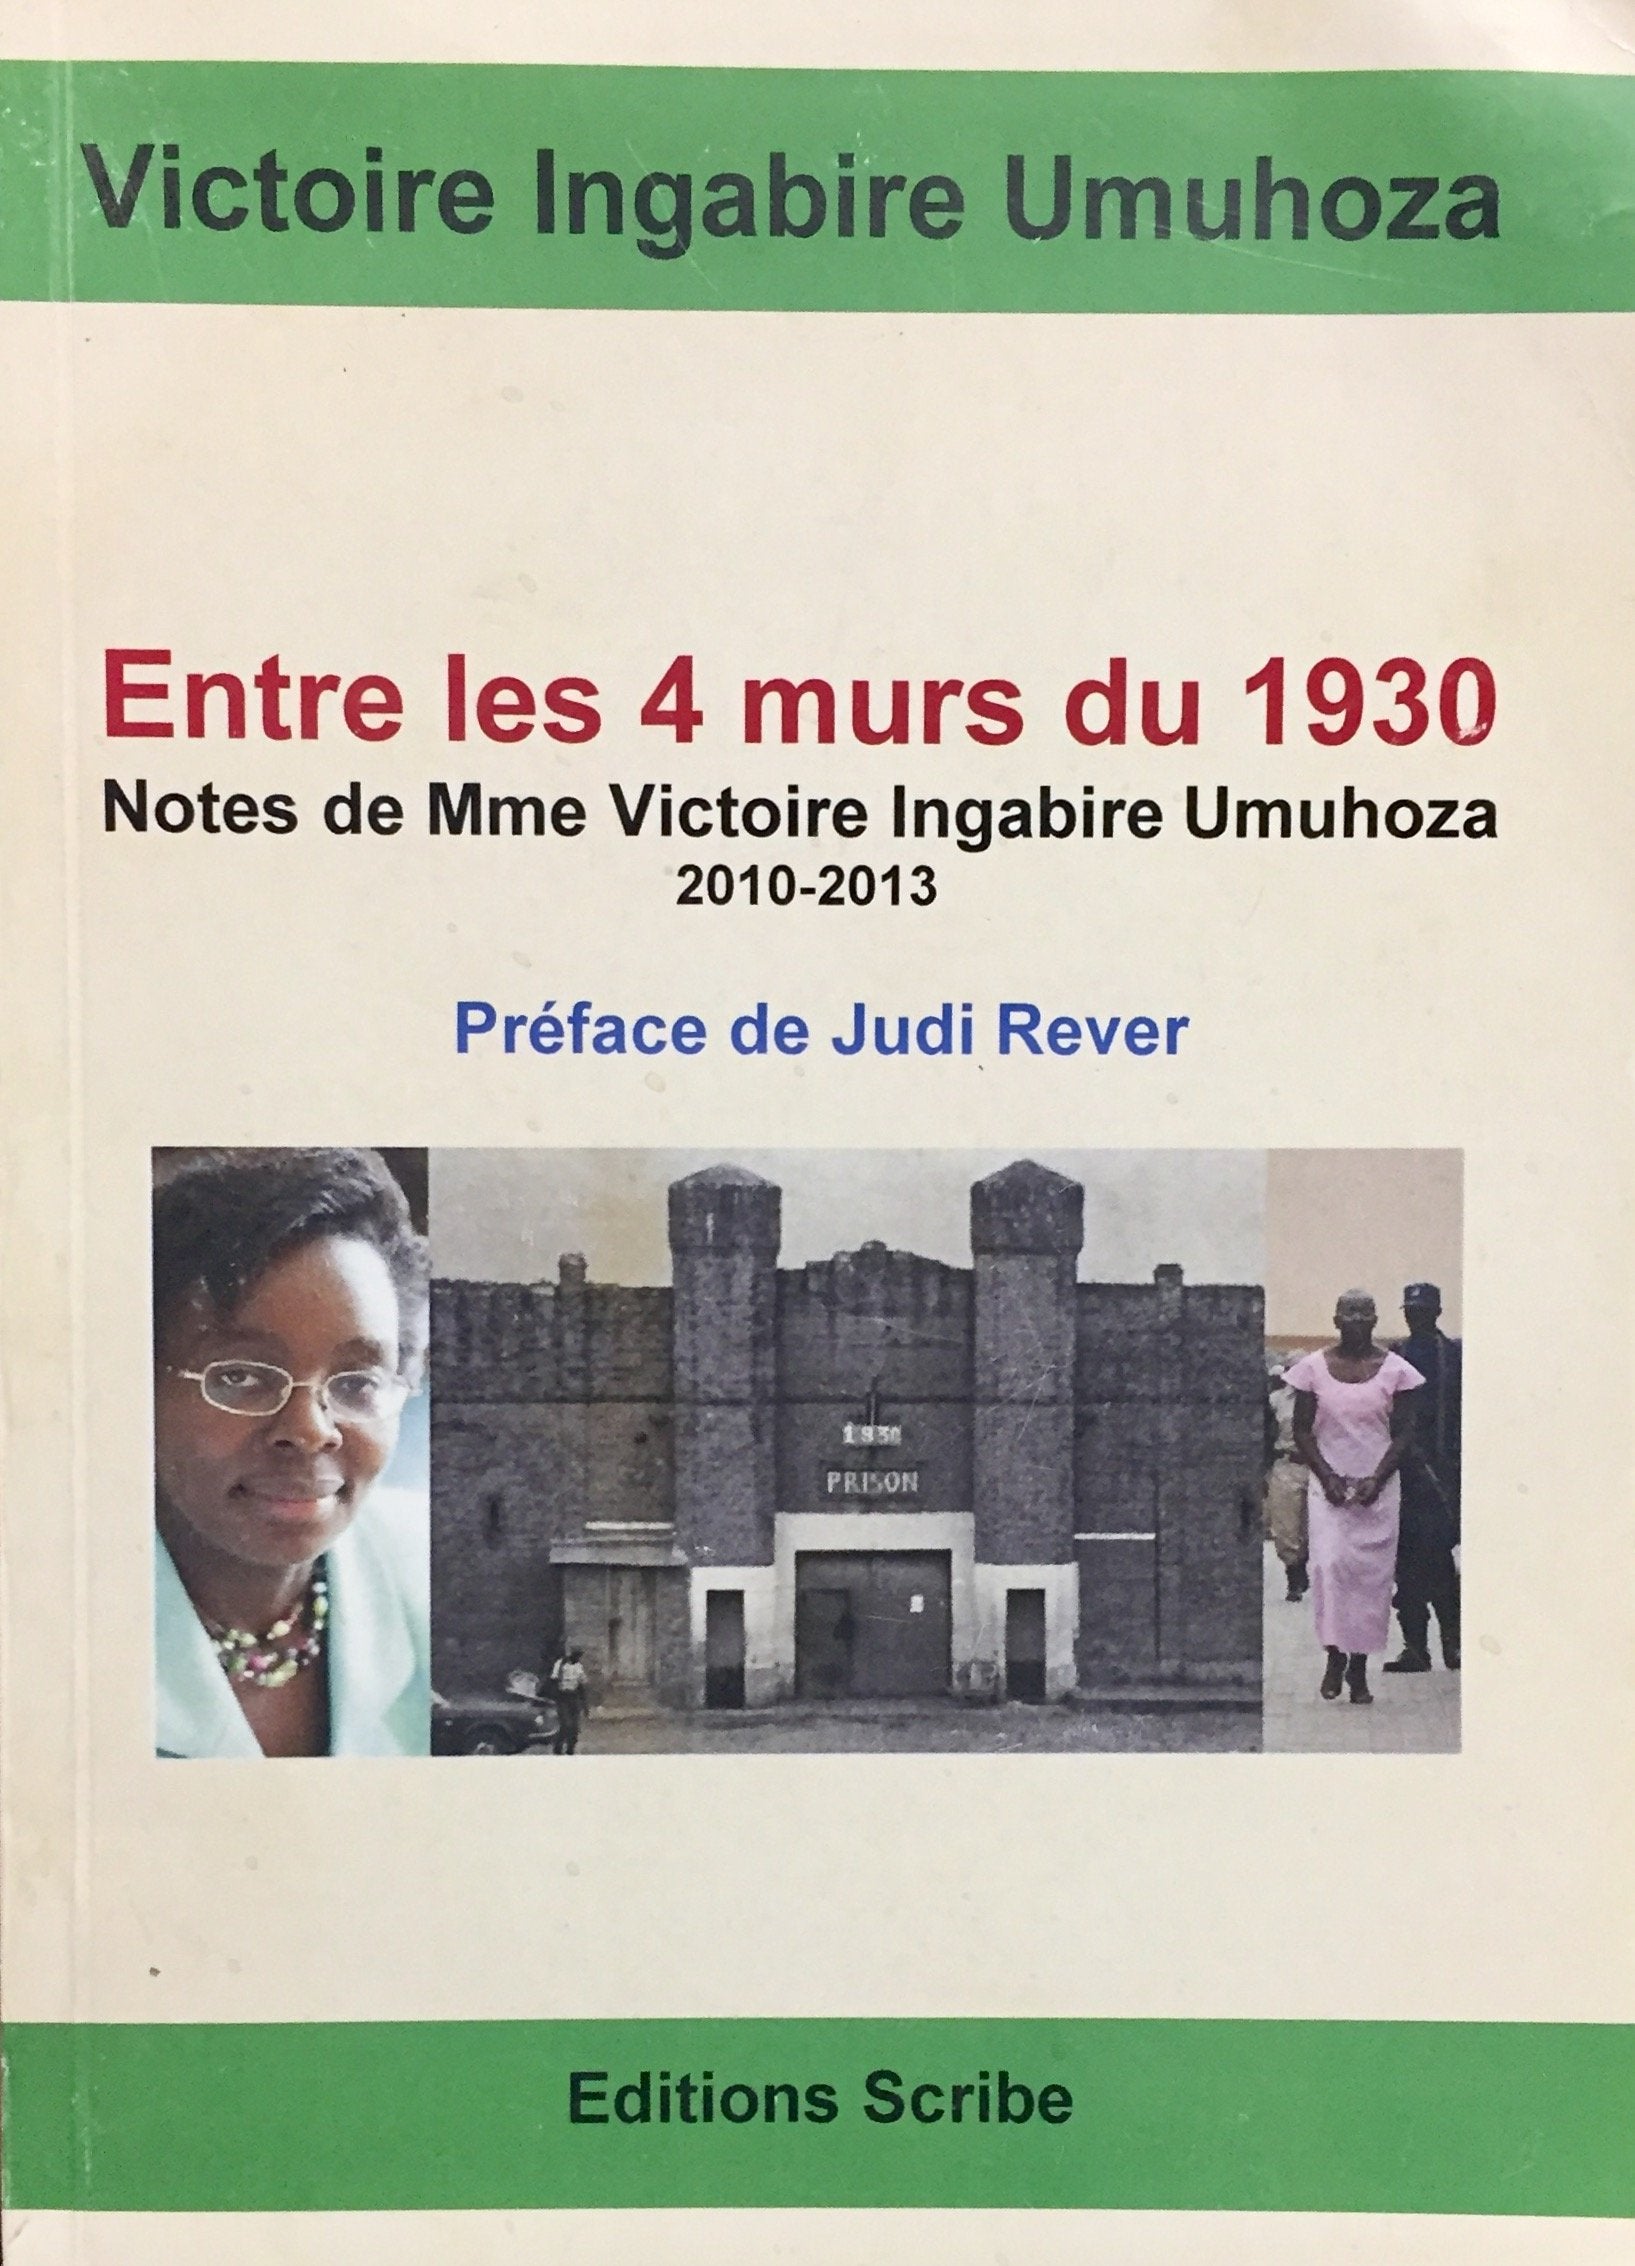 Livre ISBN 2930765089 Entre les 4 murs du 1930 : Notes de Mme Victoire Ingabire Umuhoca 2010-2013 (Victoire Ingabire Umuhoza)